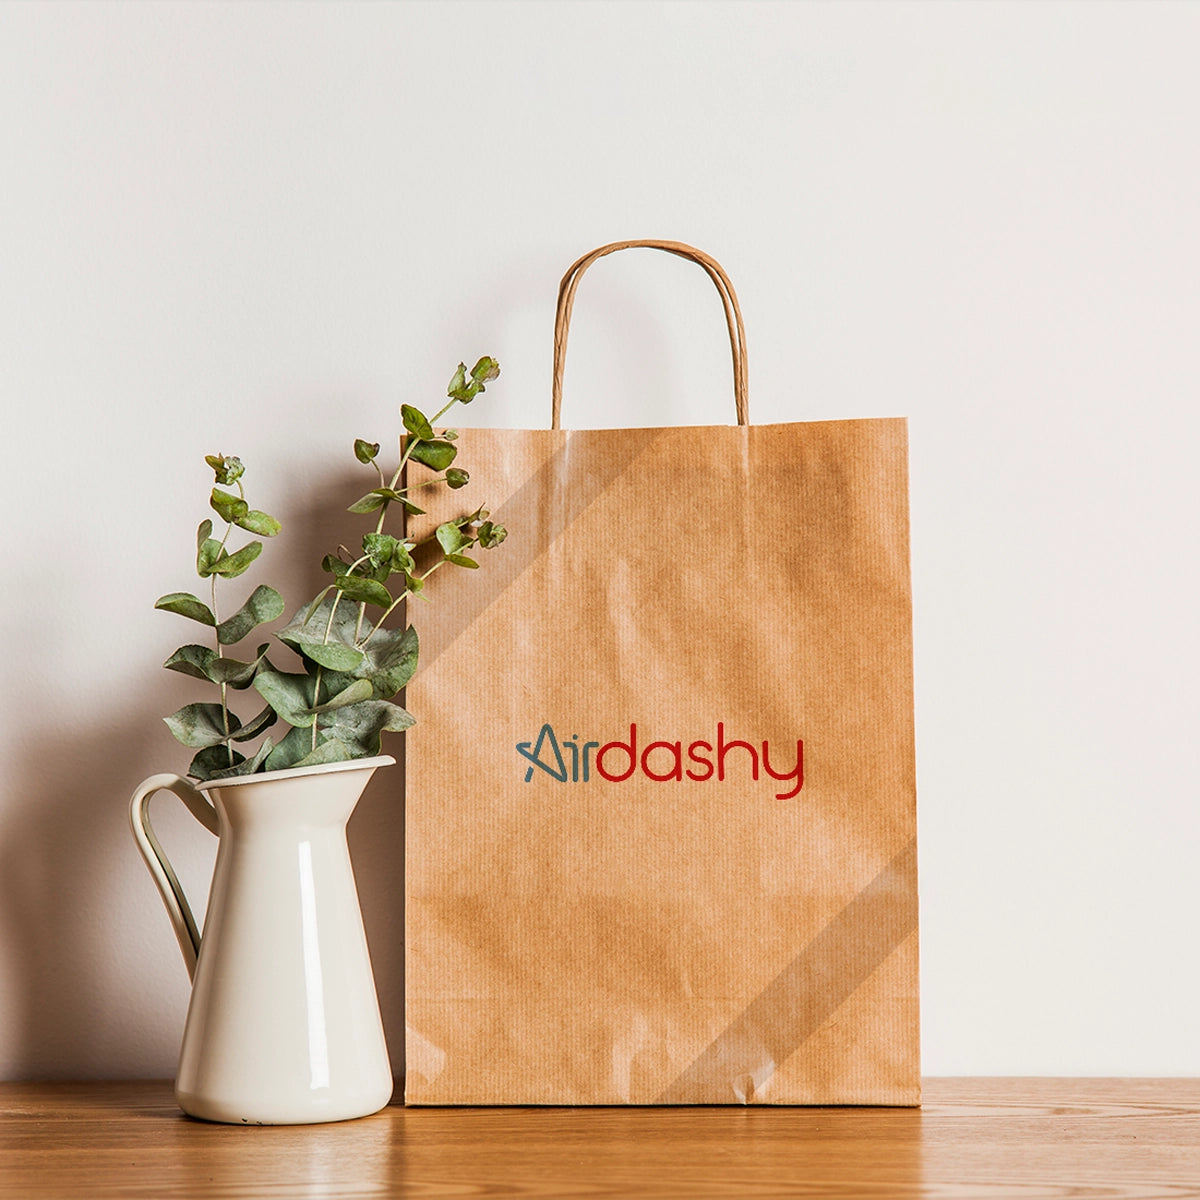 Airdashy.com